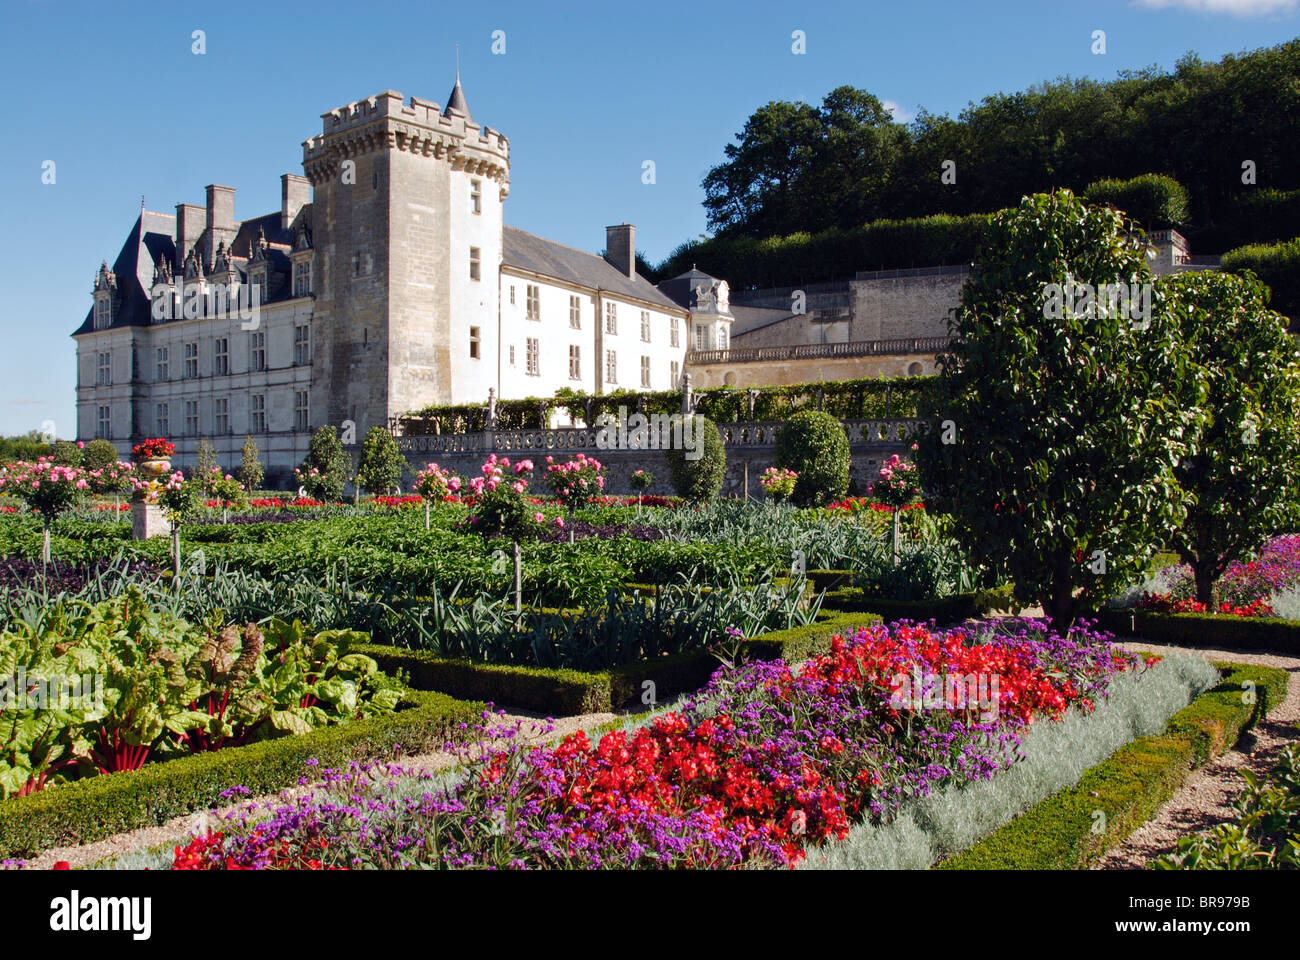 The Chateau de Villandry and the Potager garden, Indre et Loire, France Stock Photo